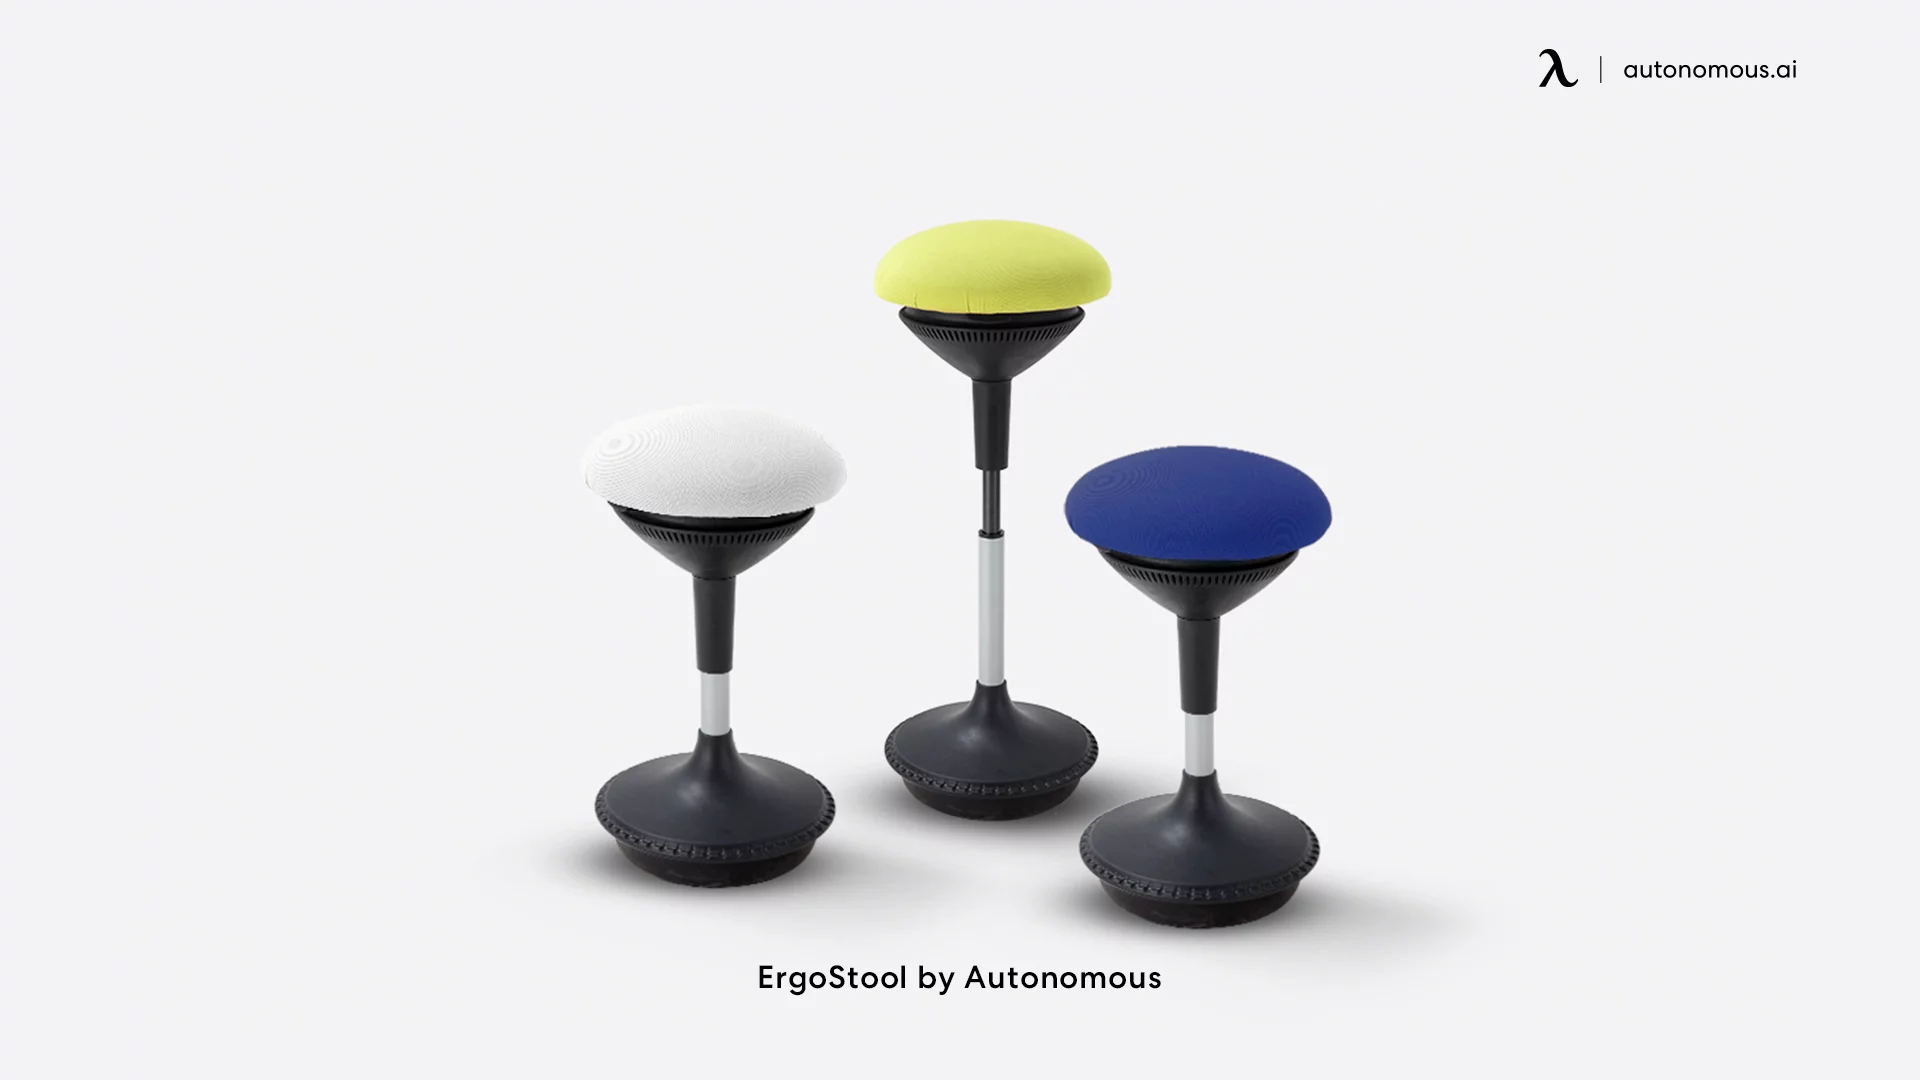 Autonomous Ergostool dorm chair